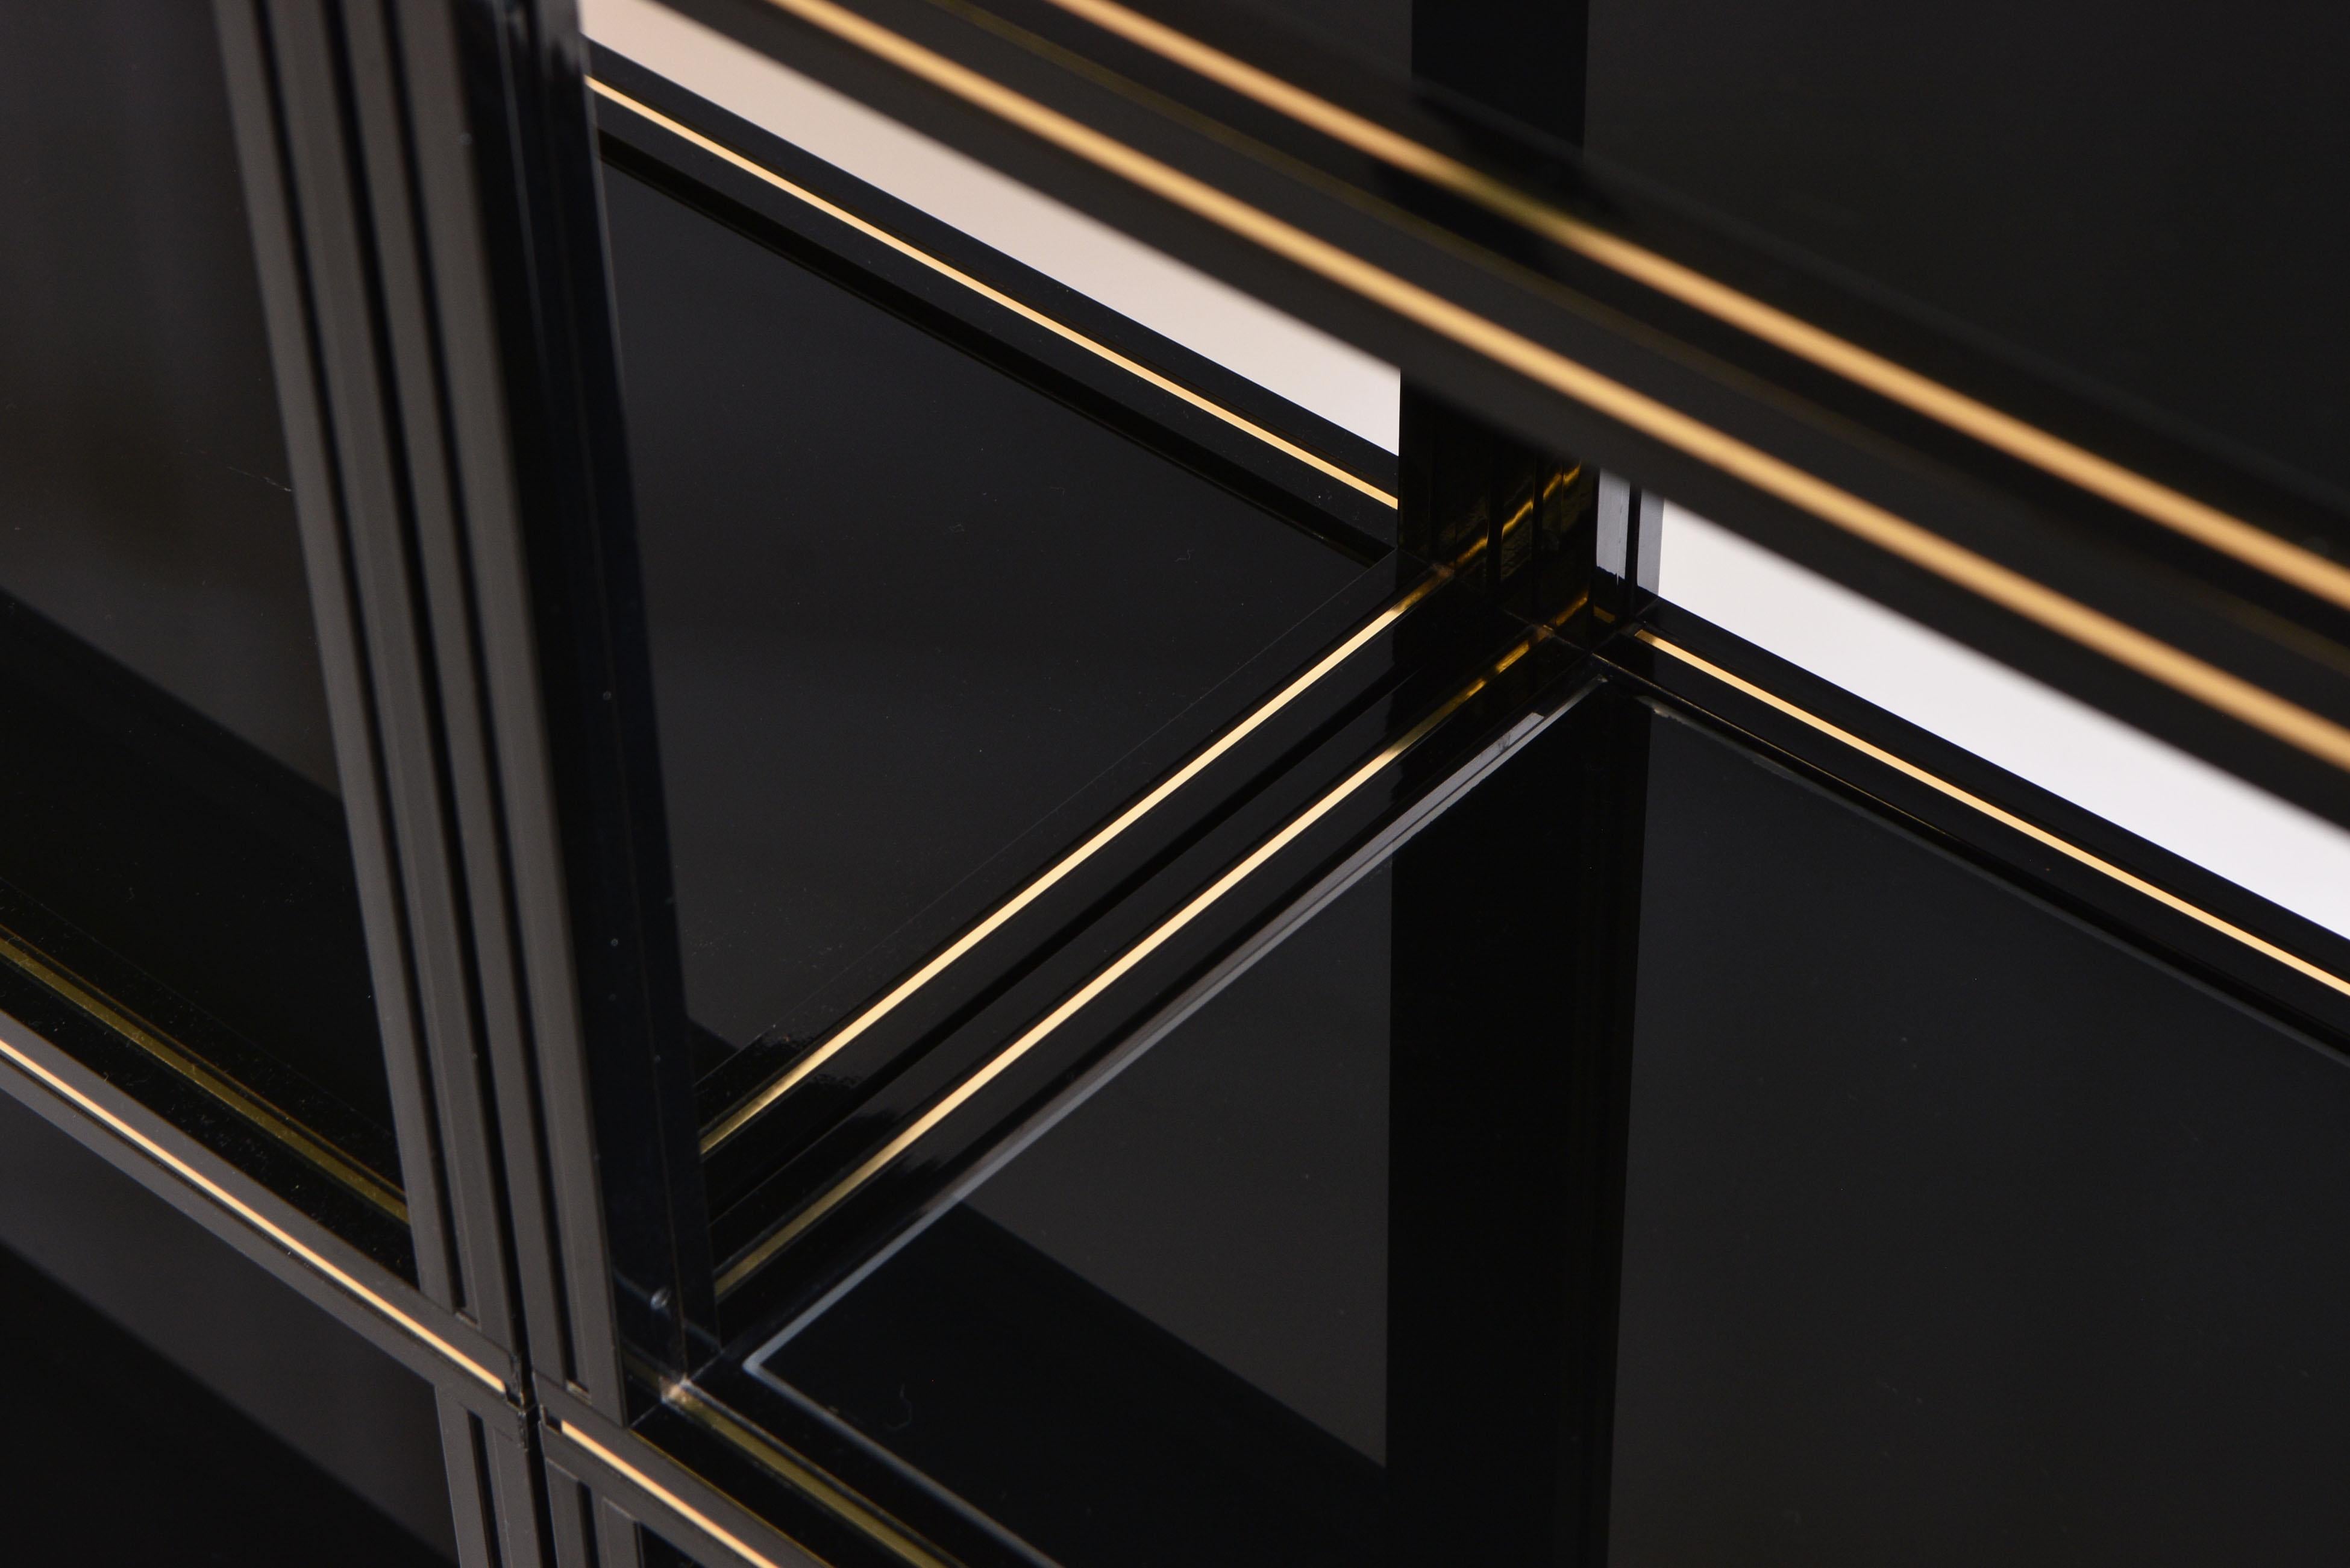 Eine zweiteilige, schwarz lackierte Aluminium-Etagere von Pierre Vandel mit Messing-Details und geschwärzten Glasböden. Etikett - Pierre Vandel Paris - ca. Ende der 1970er Jahre.

Der Möbeldesigner Pierre Vandel wurde 1946 in Roubaix, einem Vorort